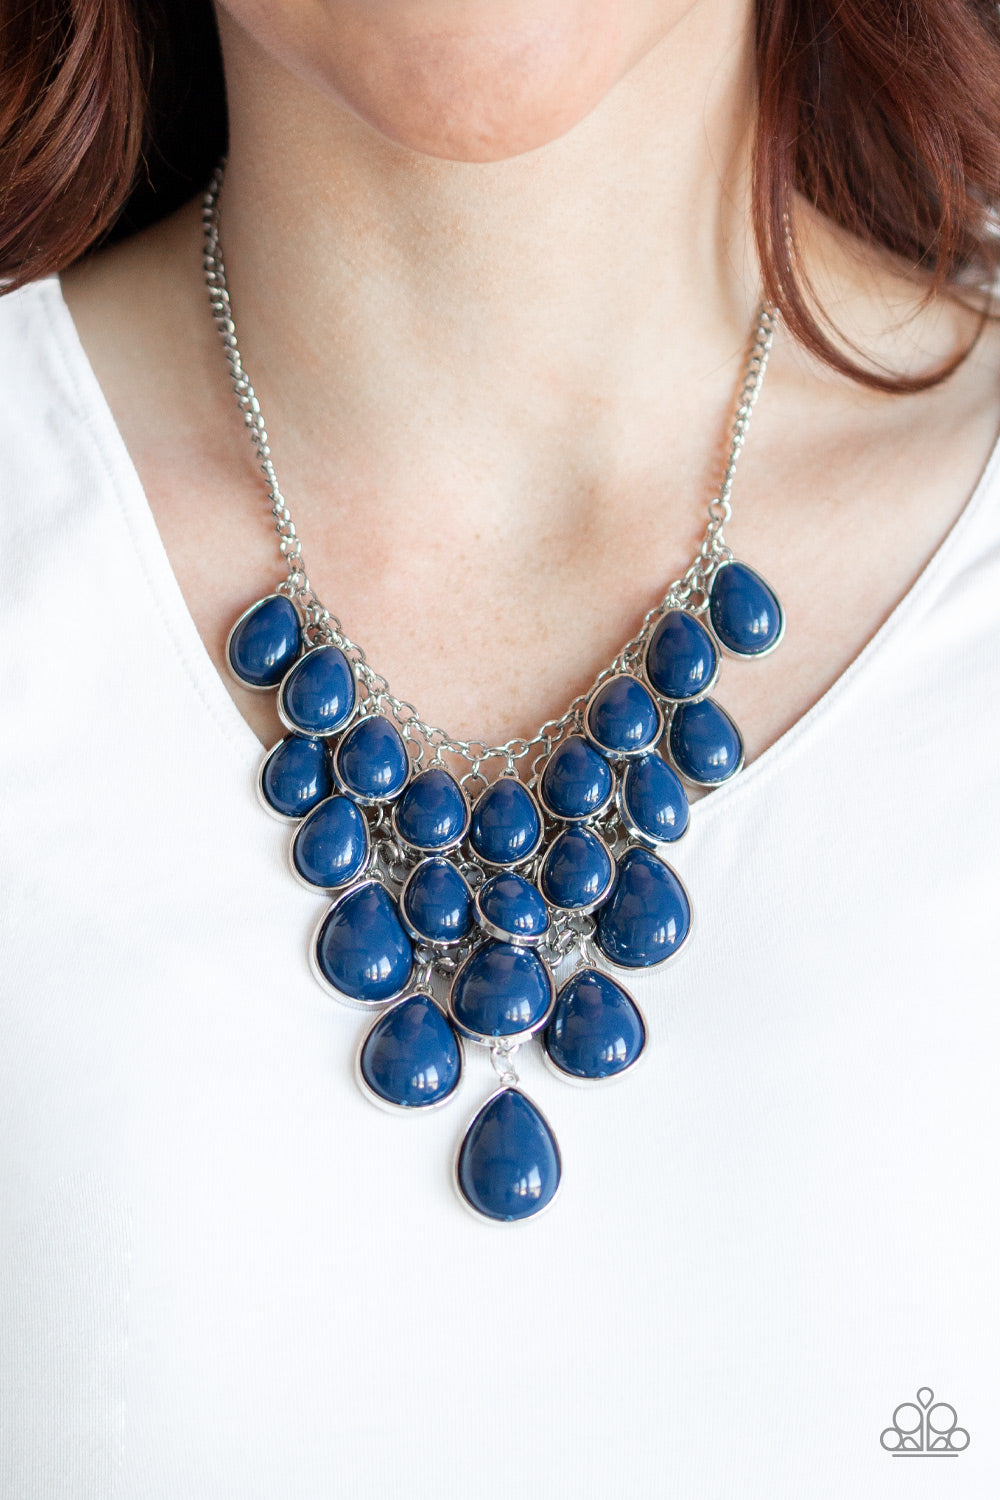 Paparazzi Accessories Shop til You Teardrop - Blue Necklaces - Lady T Accessories